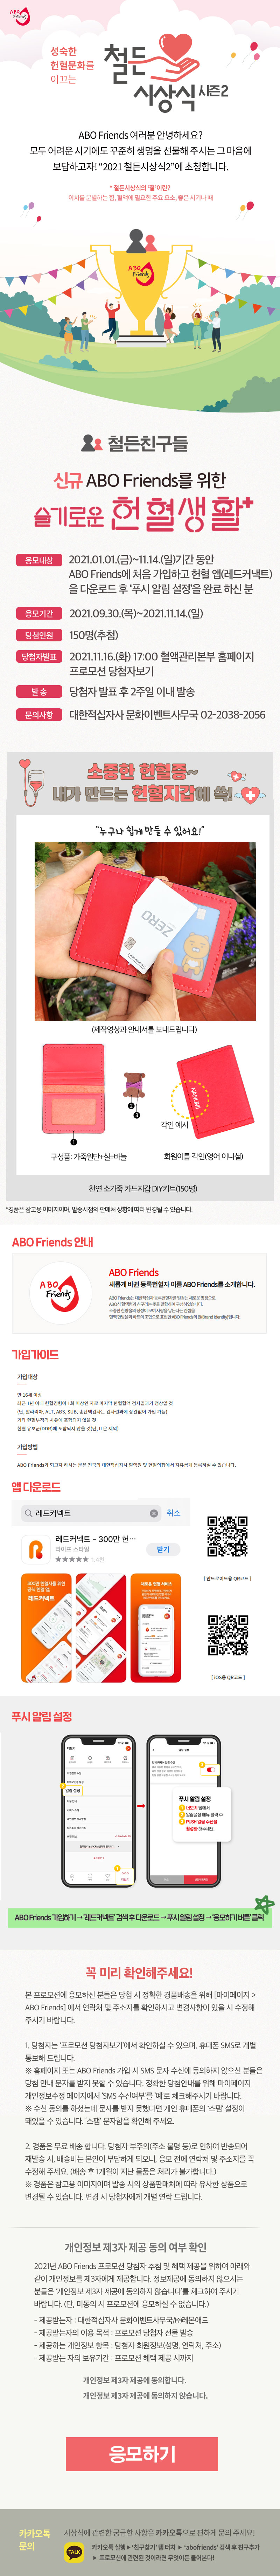 신규 ABO Friends 슬기로운 헌혈생활!